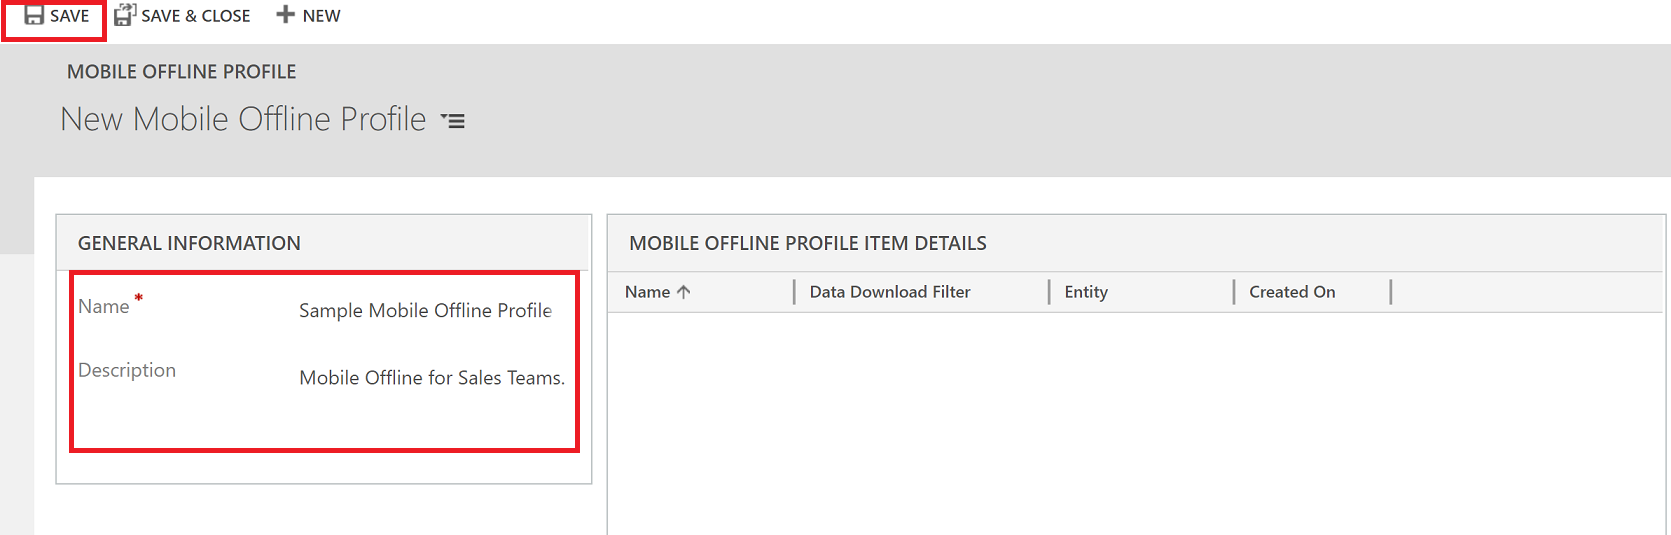 Asignar un nombre al perfil de Mobile Offline